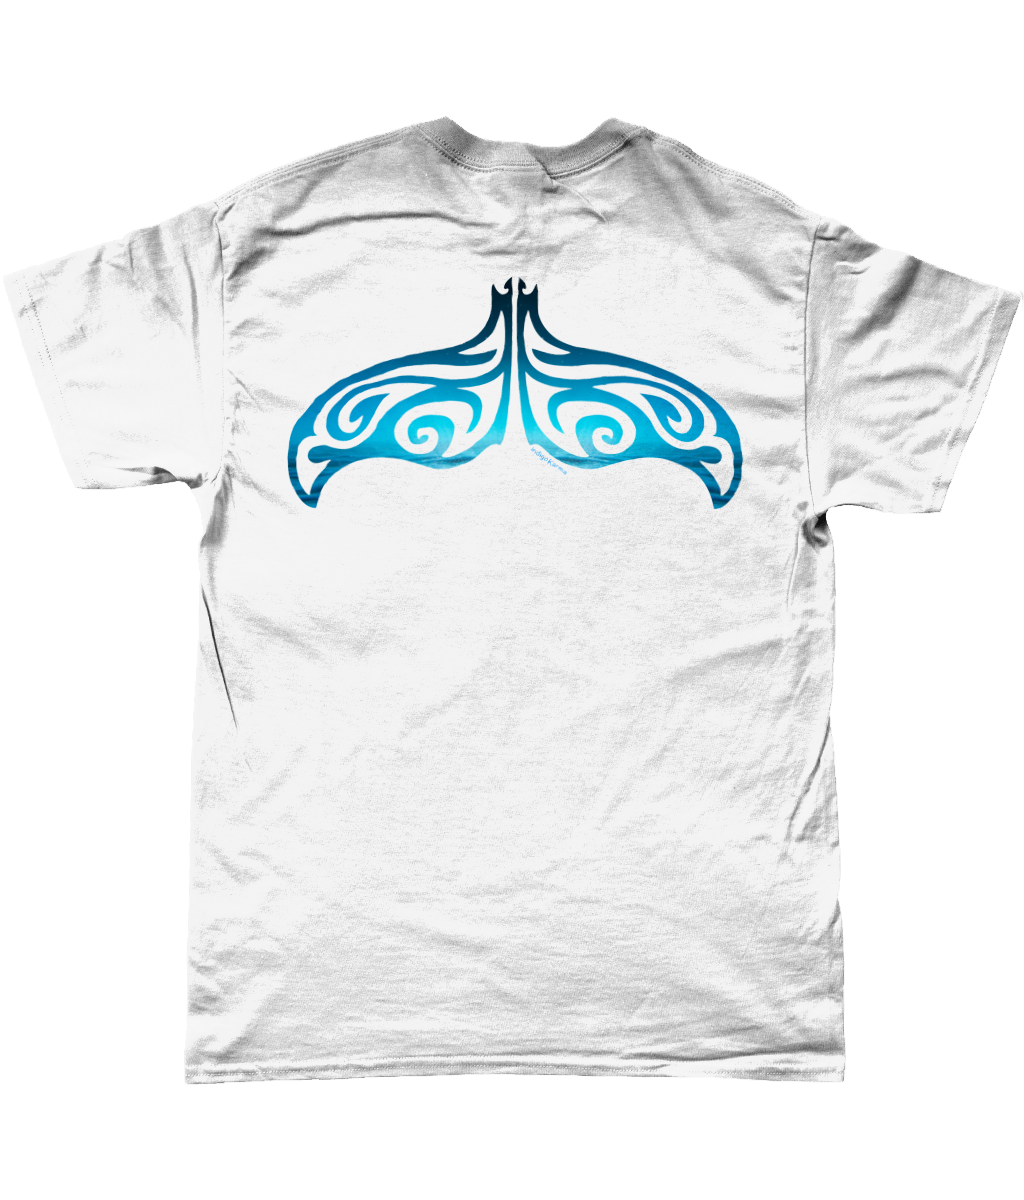 Underwave whaletail t-shirt